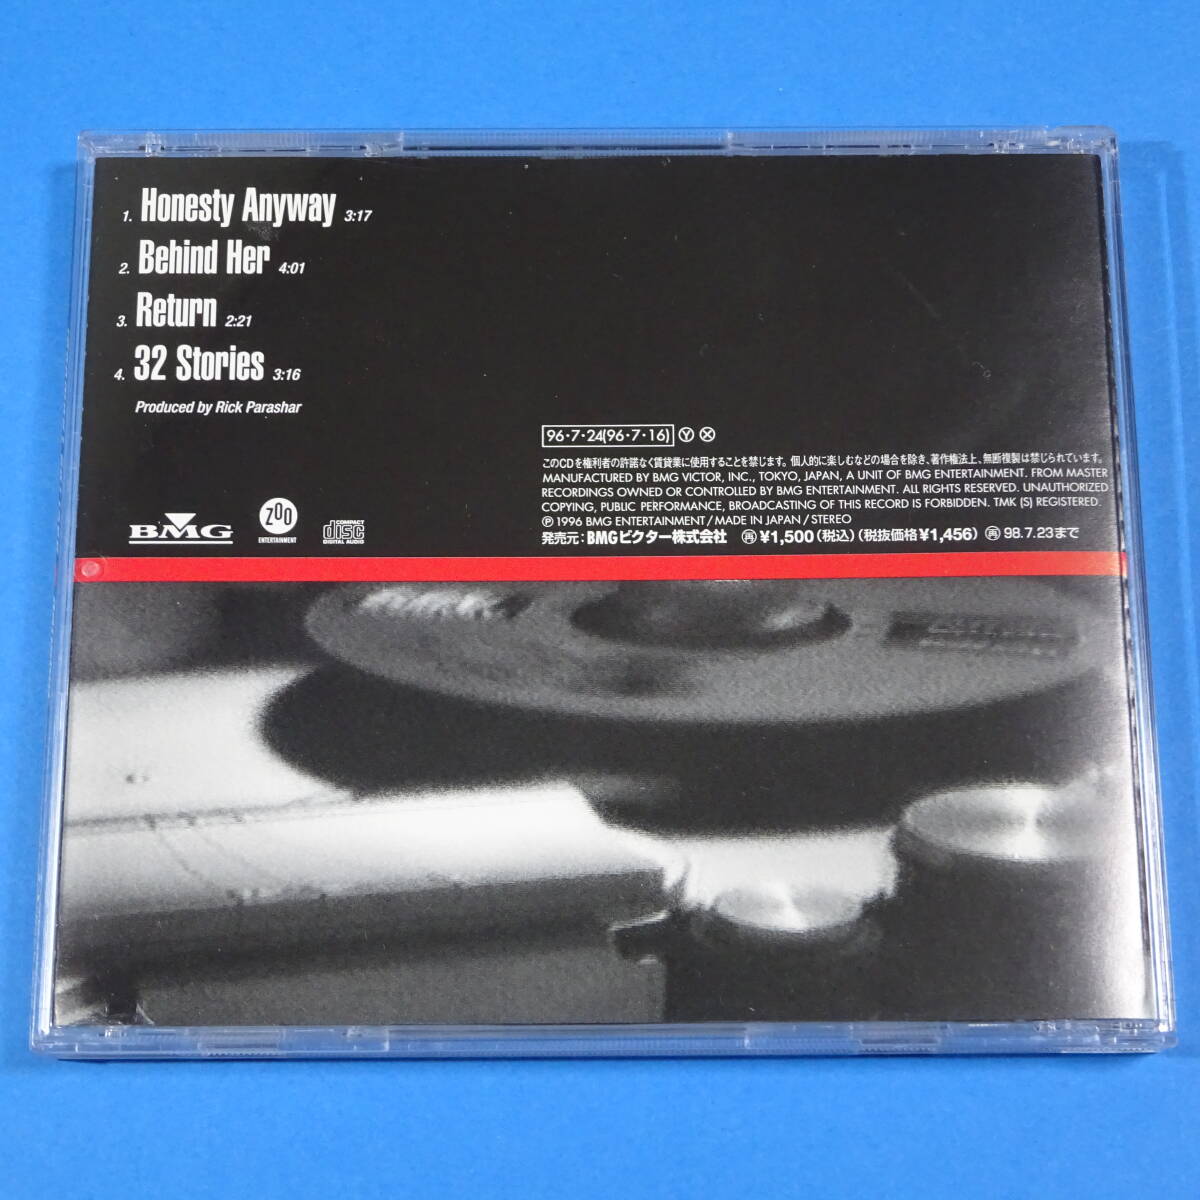 CD　ドッグスター / クアトロ・フォルマッジ　DOGSTAR / QUATTRO FORMAGGI　1996年　日本盤　ロック　4曲入り　ベース:キアヌ・リーブス_画像2